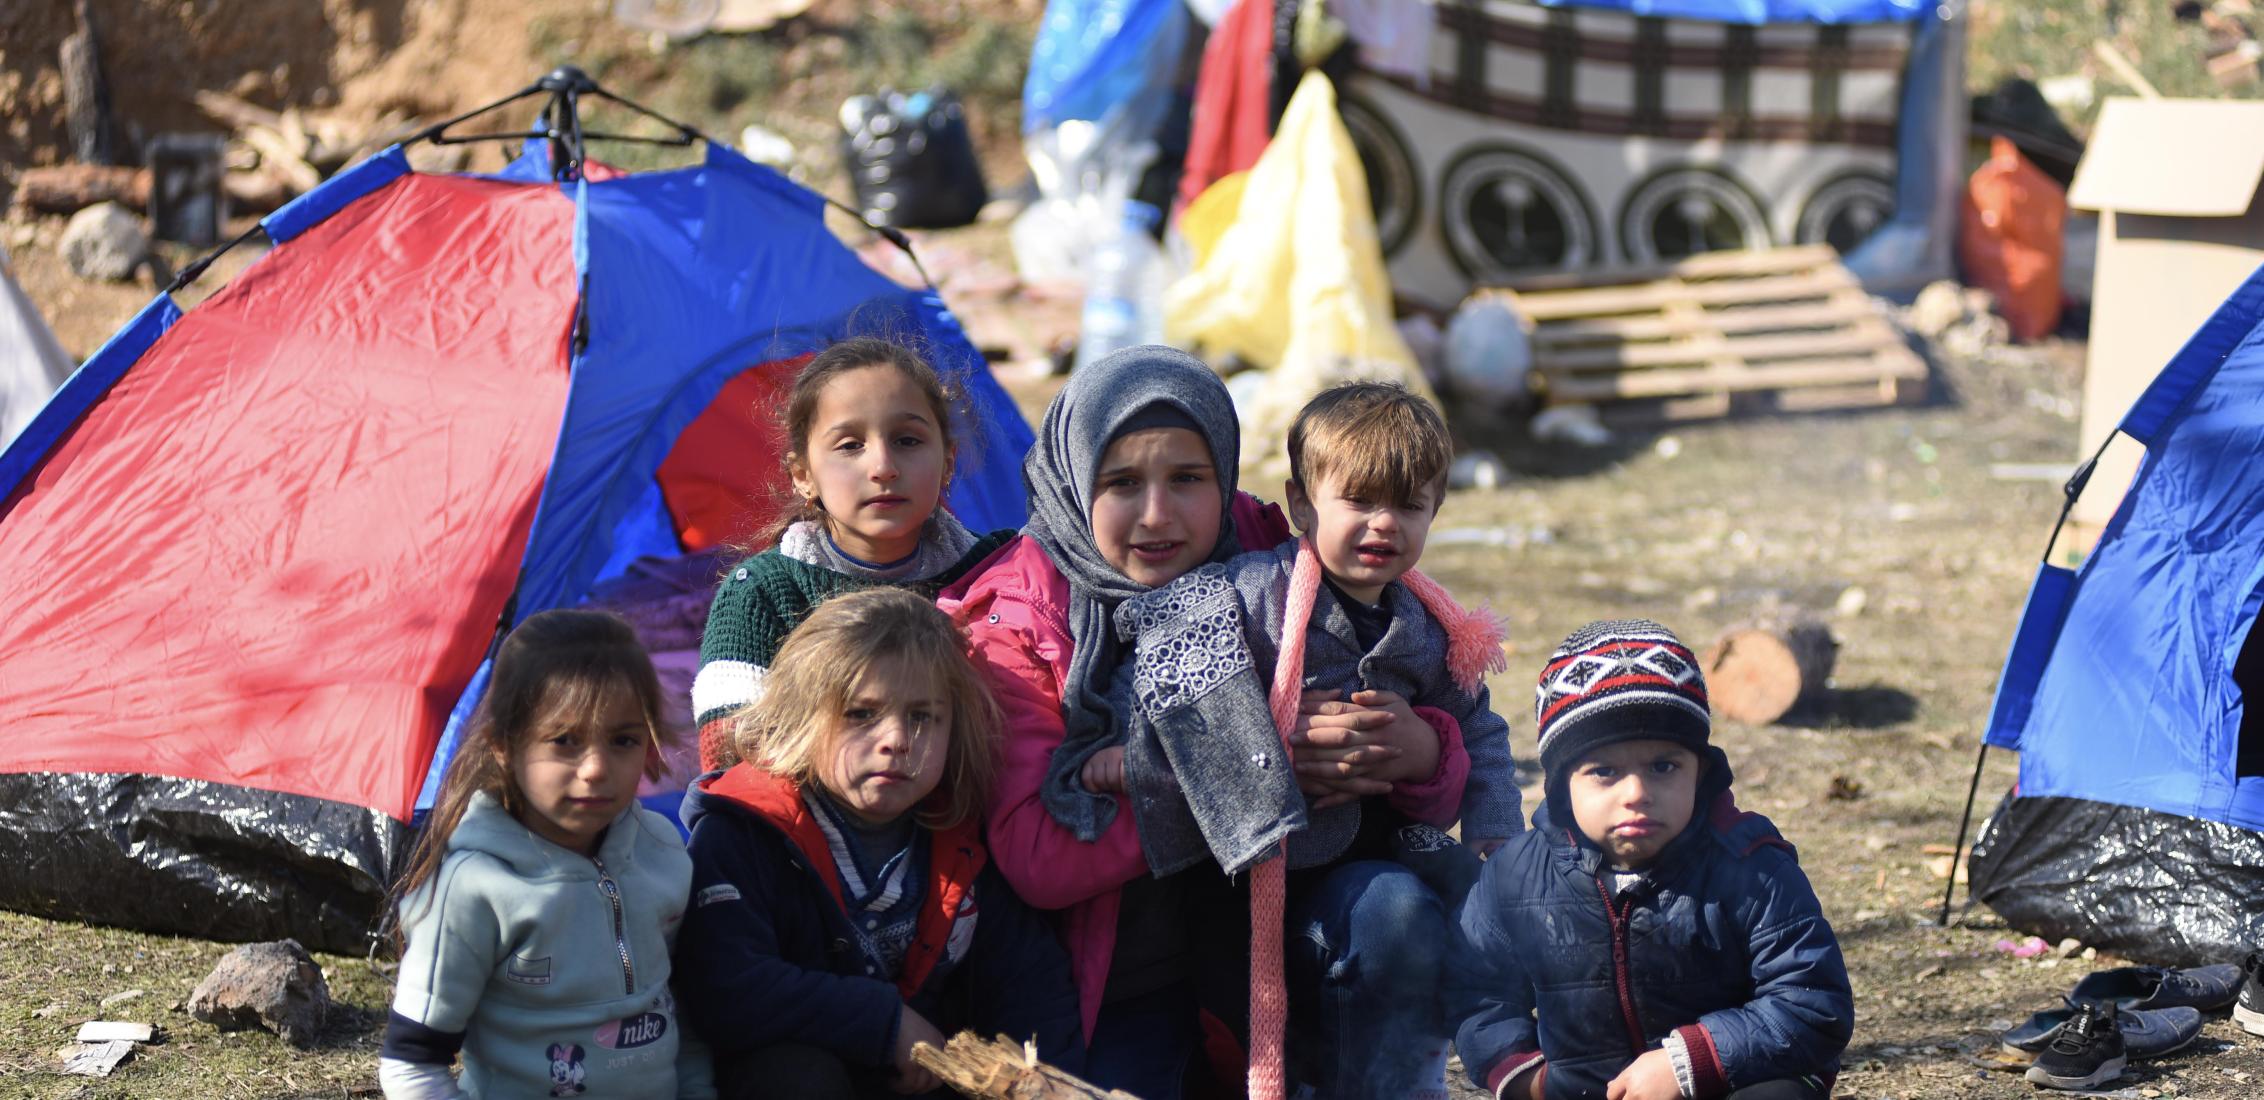 UN0781448/Ölçer: Une famille de réfugiés syriens ayant survécu au tremblement de terre de magnitude 7,7 et aux dizaines de répliques qui ont frappé le sud-est de la Türkiye et la Syrie le 6 février 2023 s'abrite dans un site temporaire dans la province d'Onikişubat, à Kahramanmaraş.